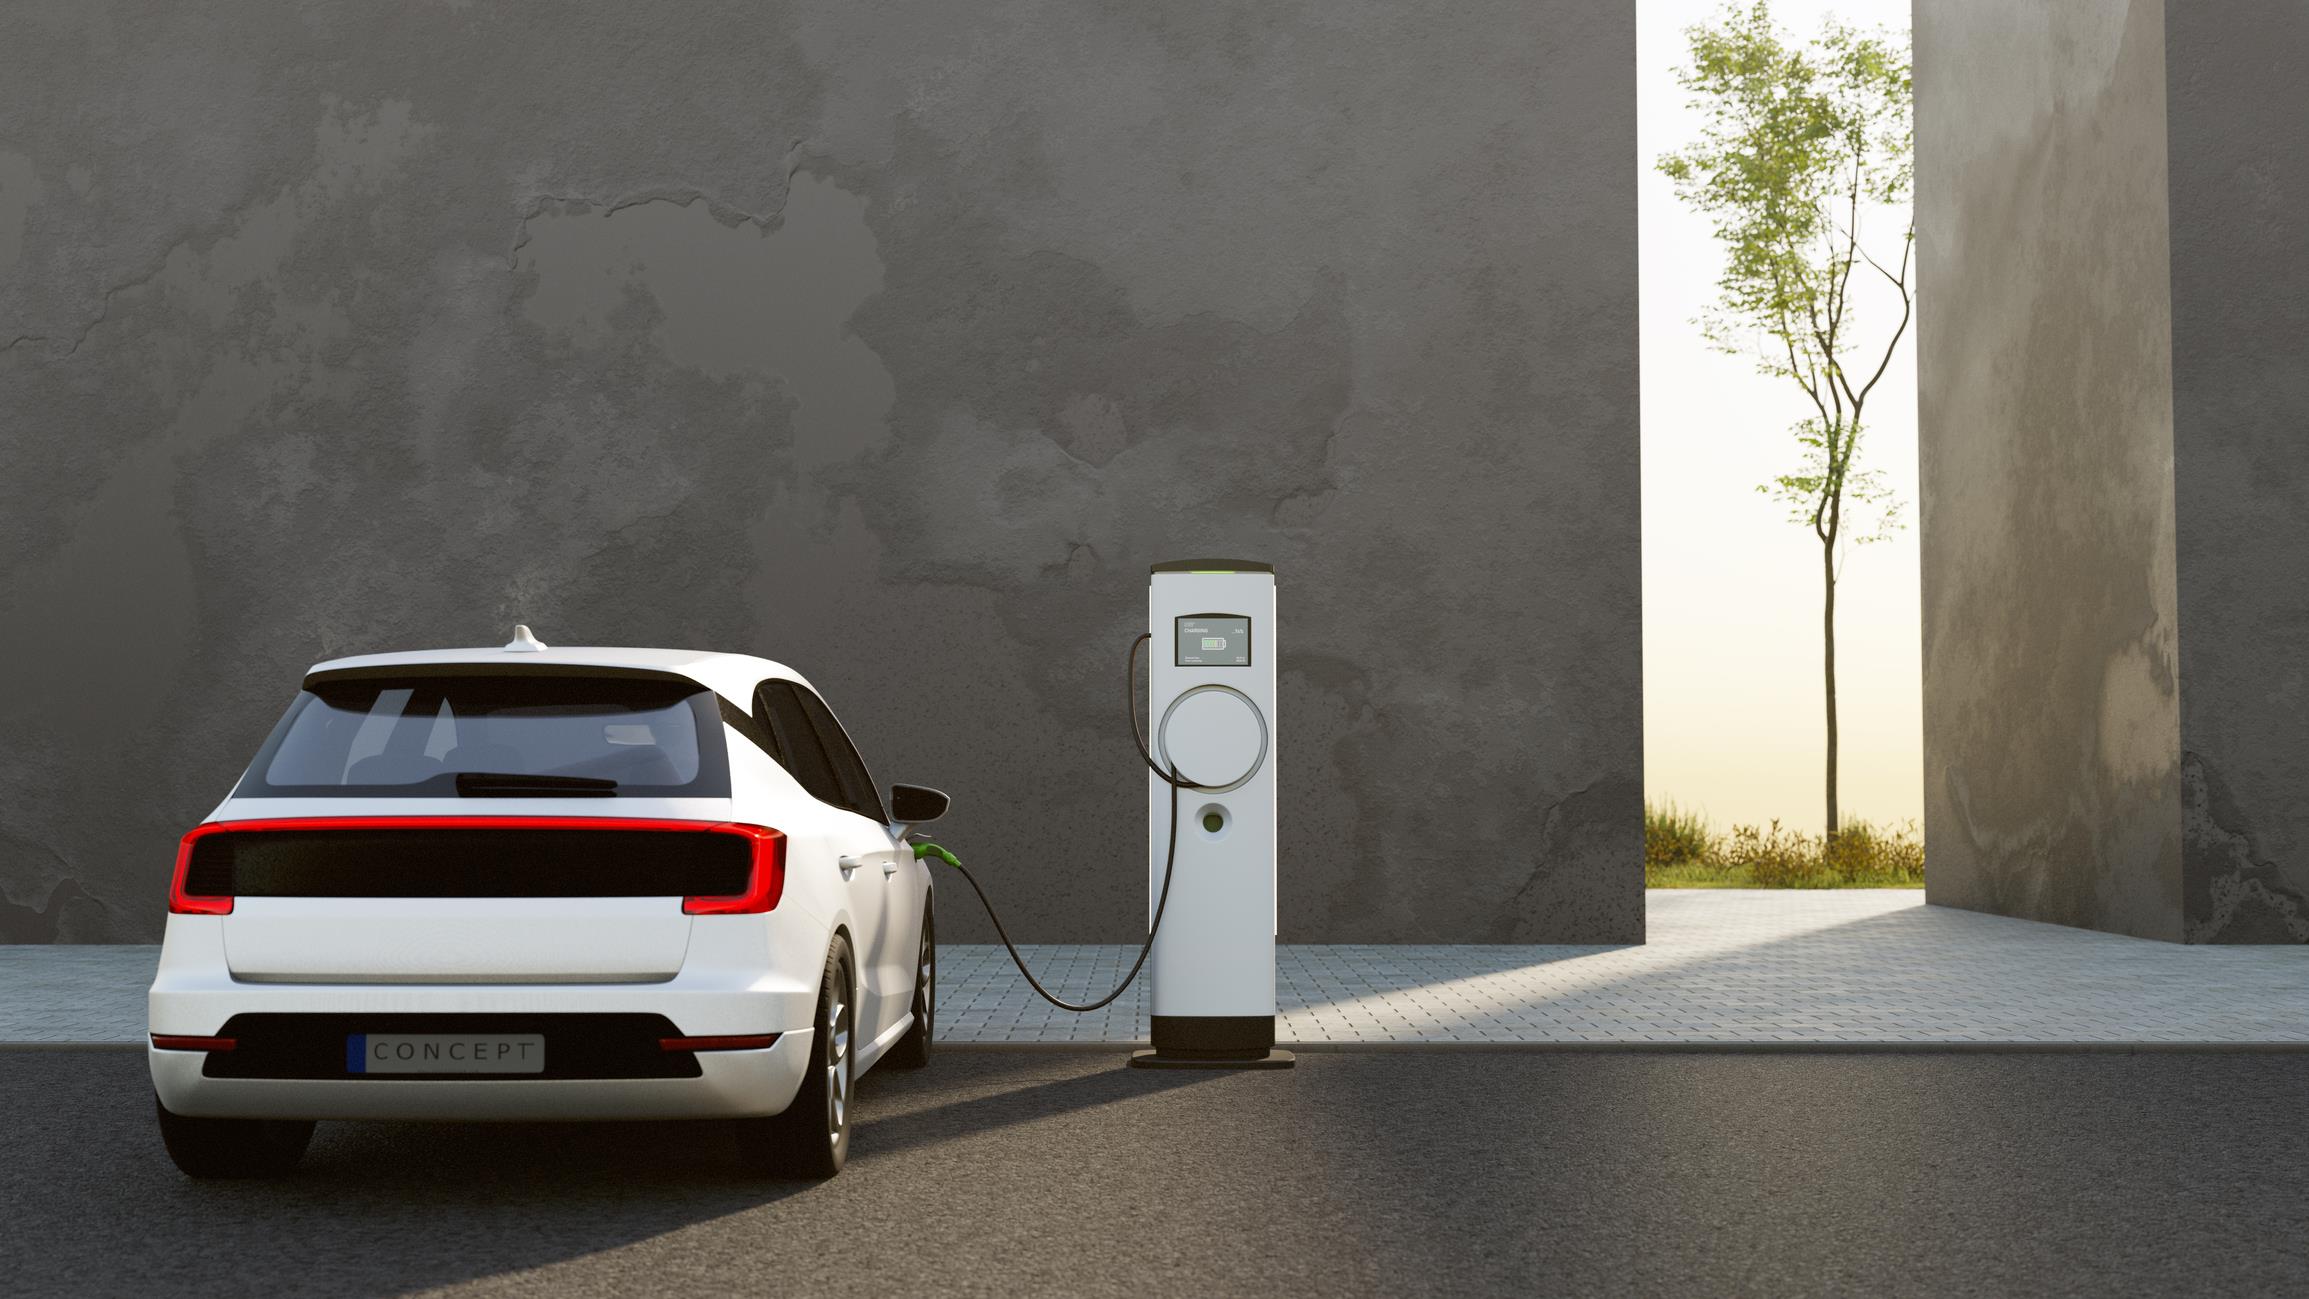 La voiture électrique, plus écologique qu'un véhicule à combustion?